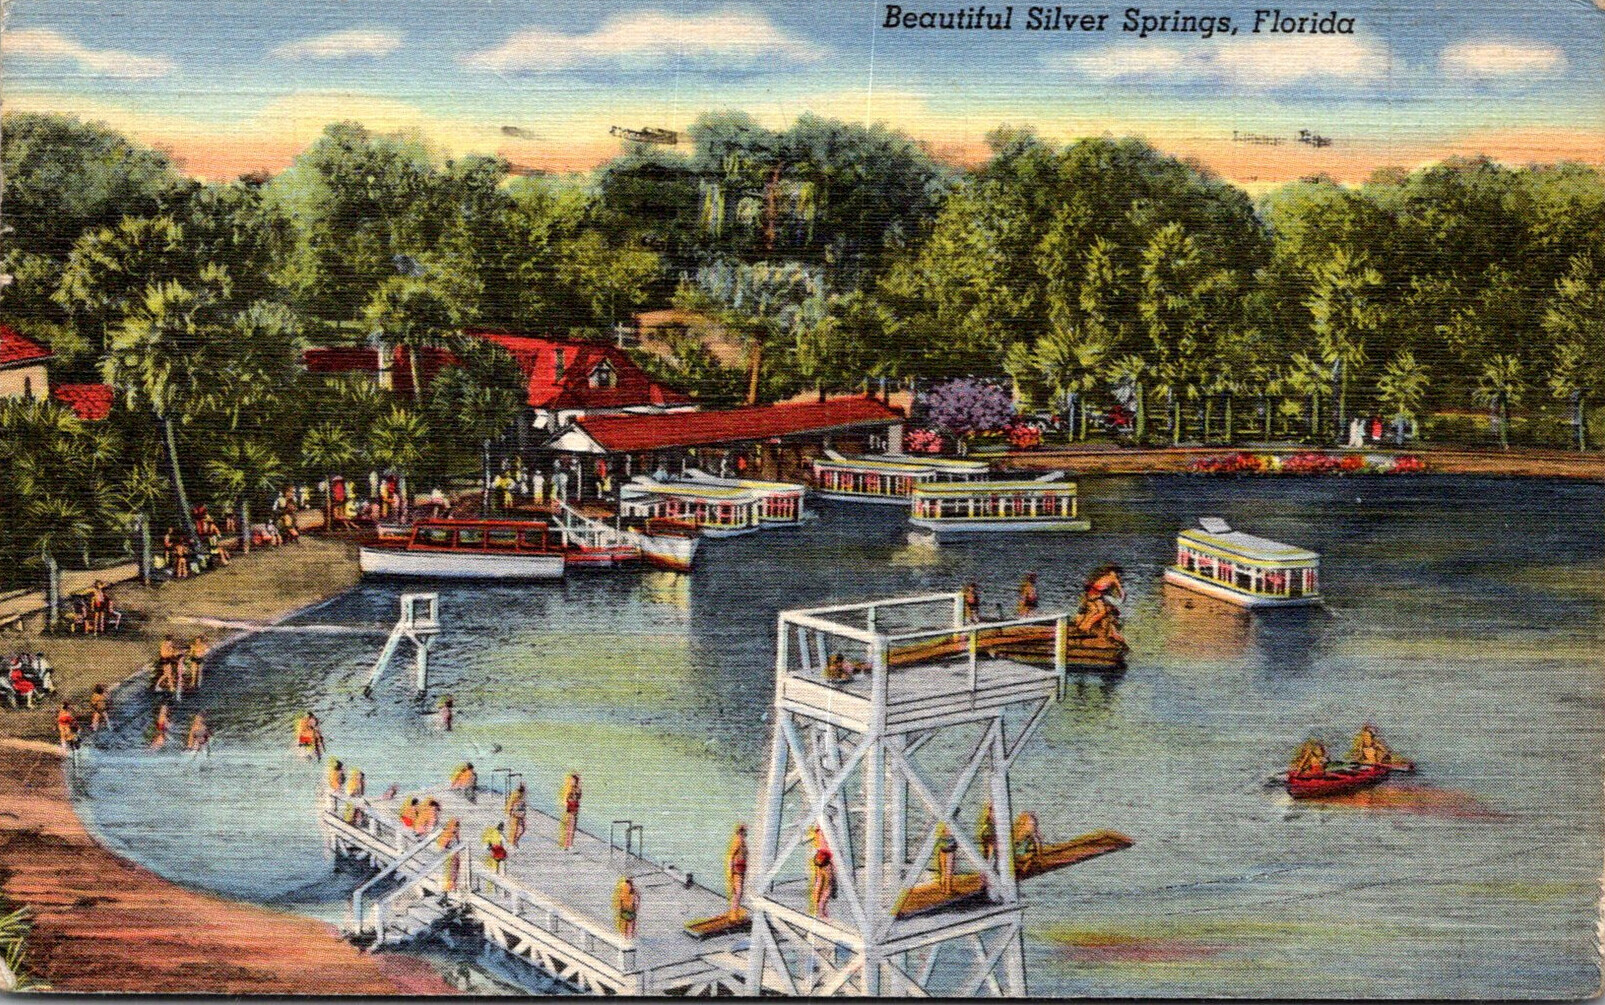 Florida Silver Springs Boat Docks 1944 Curteich | United States ...